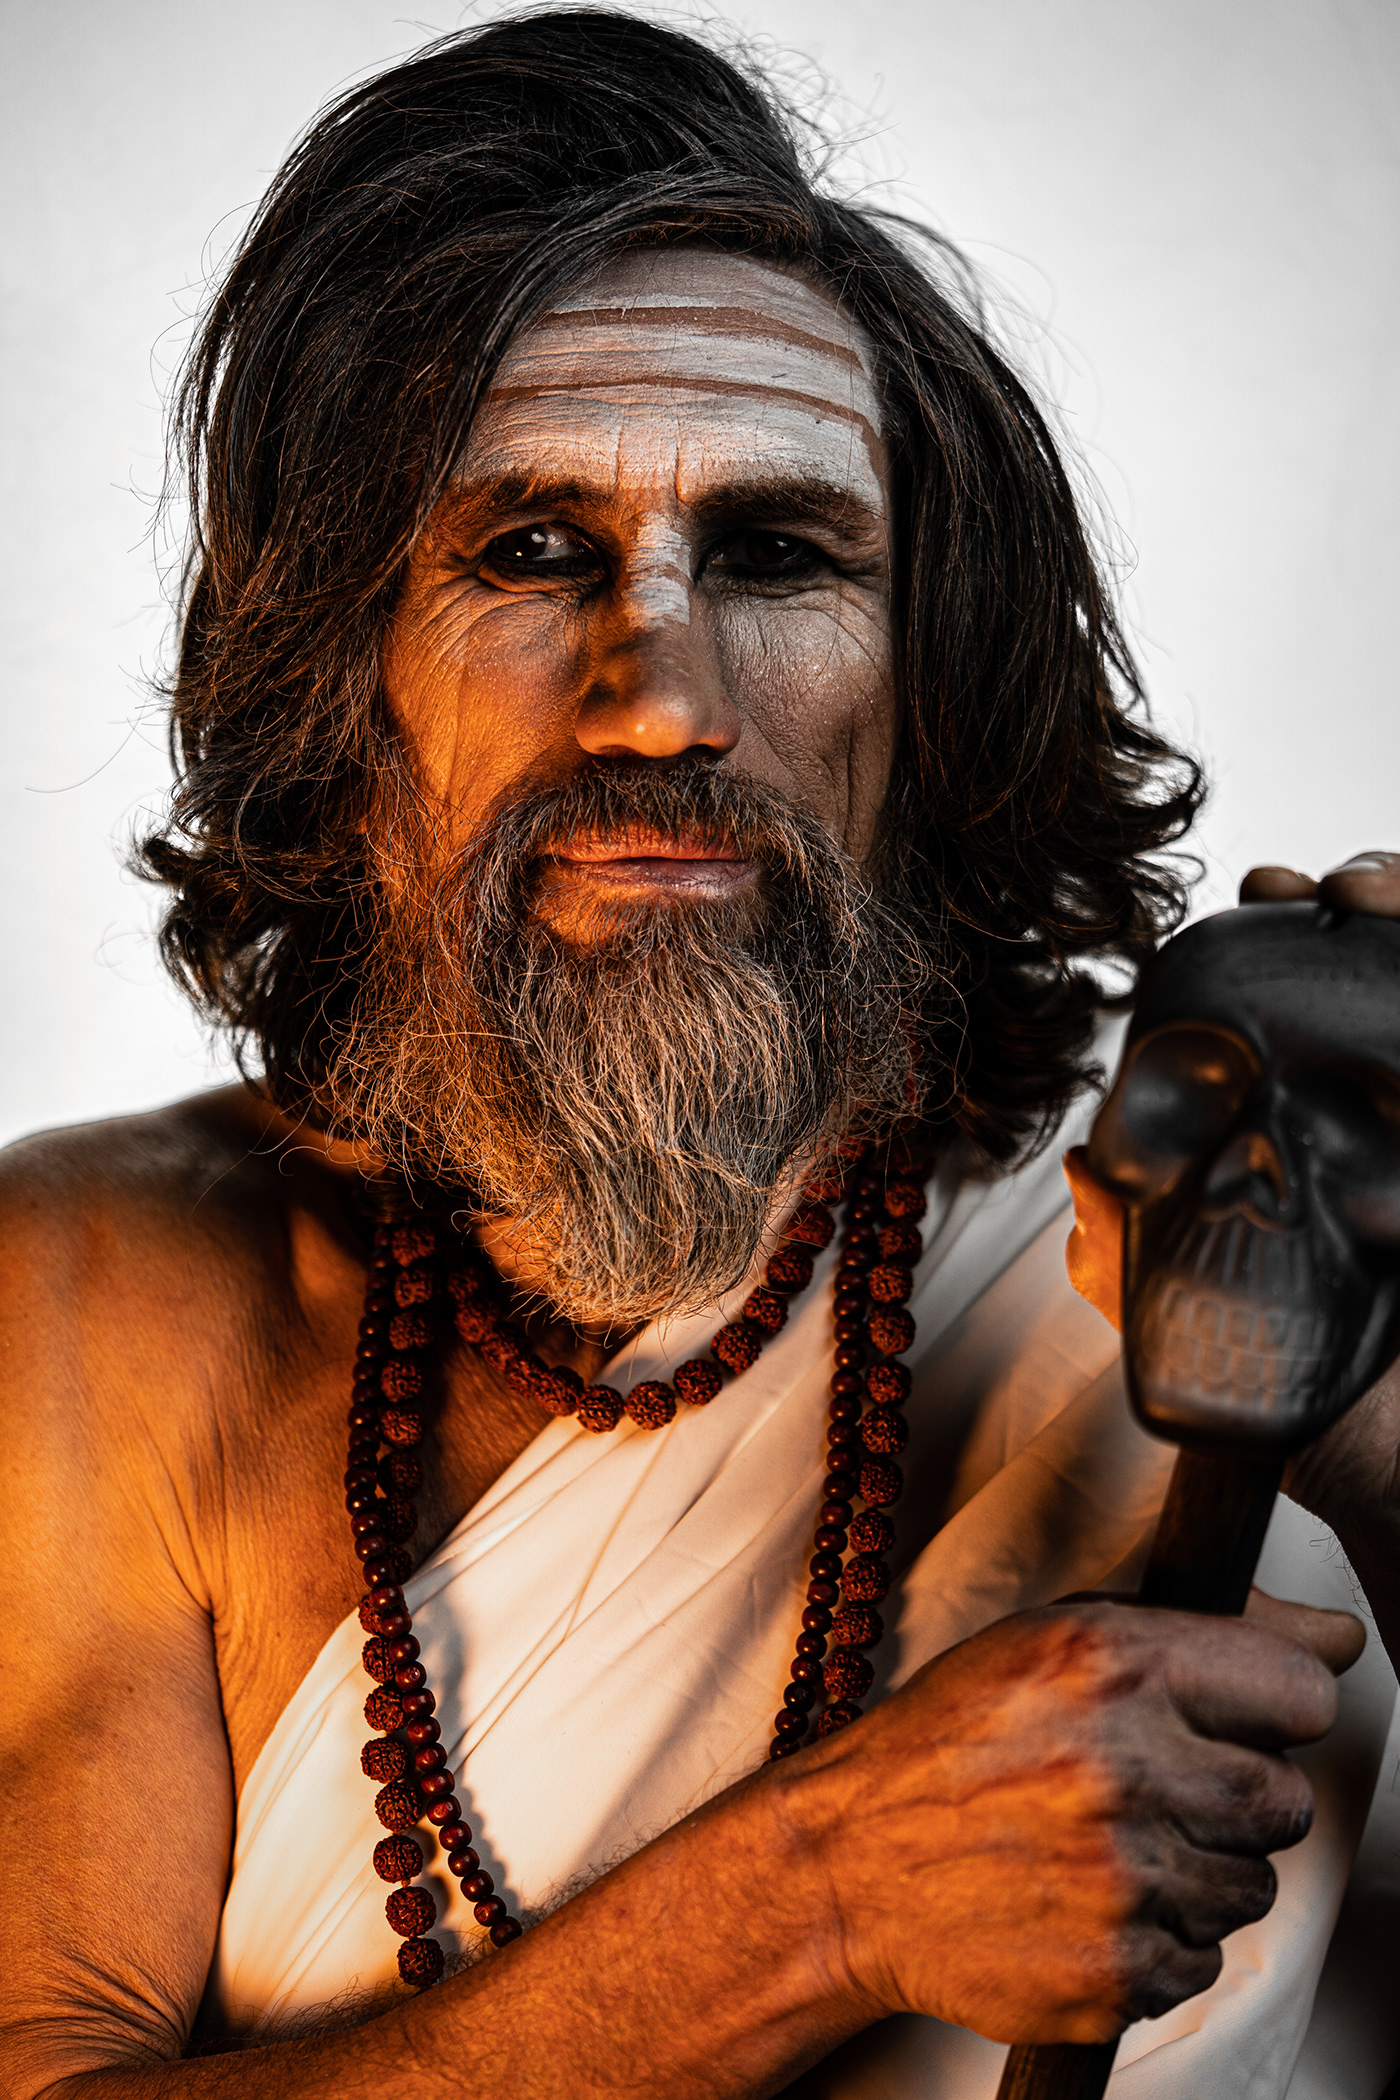 арт индия Йог люди мужской портрет с бородой портрет Садху